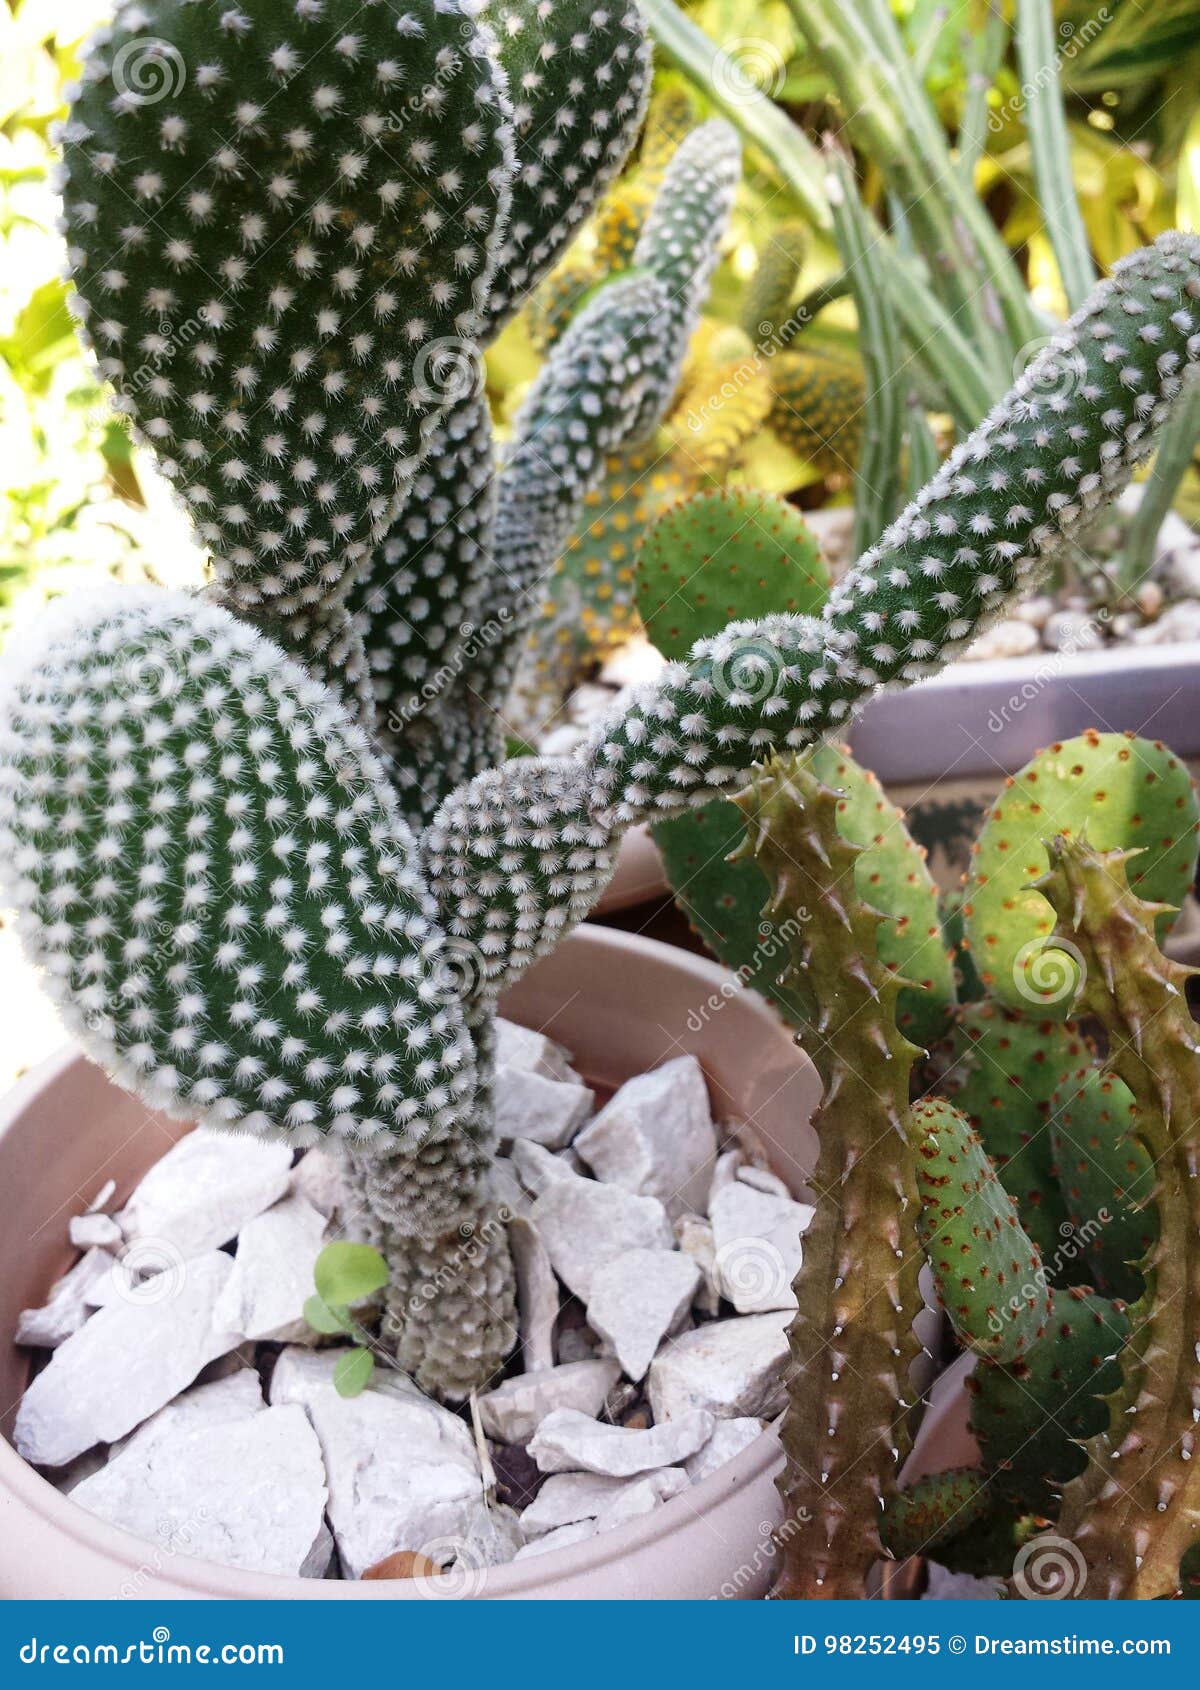 cactus conejo